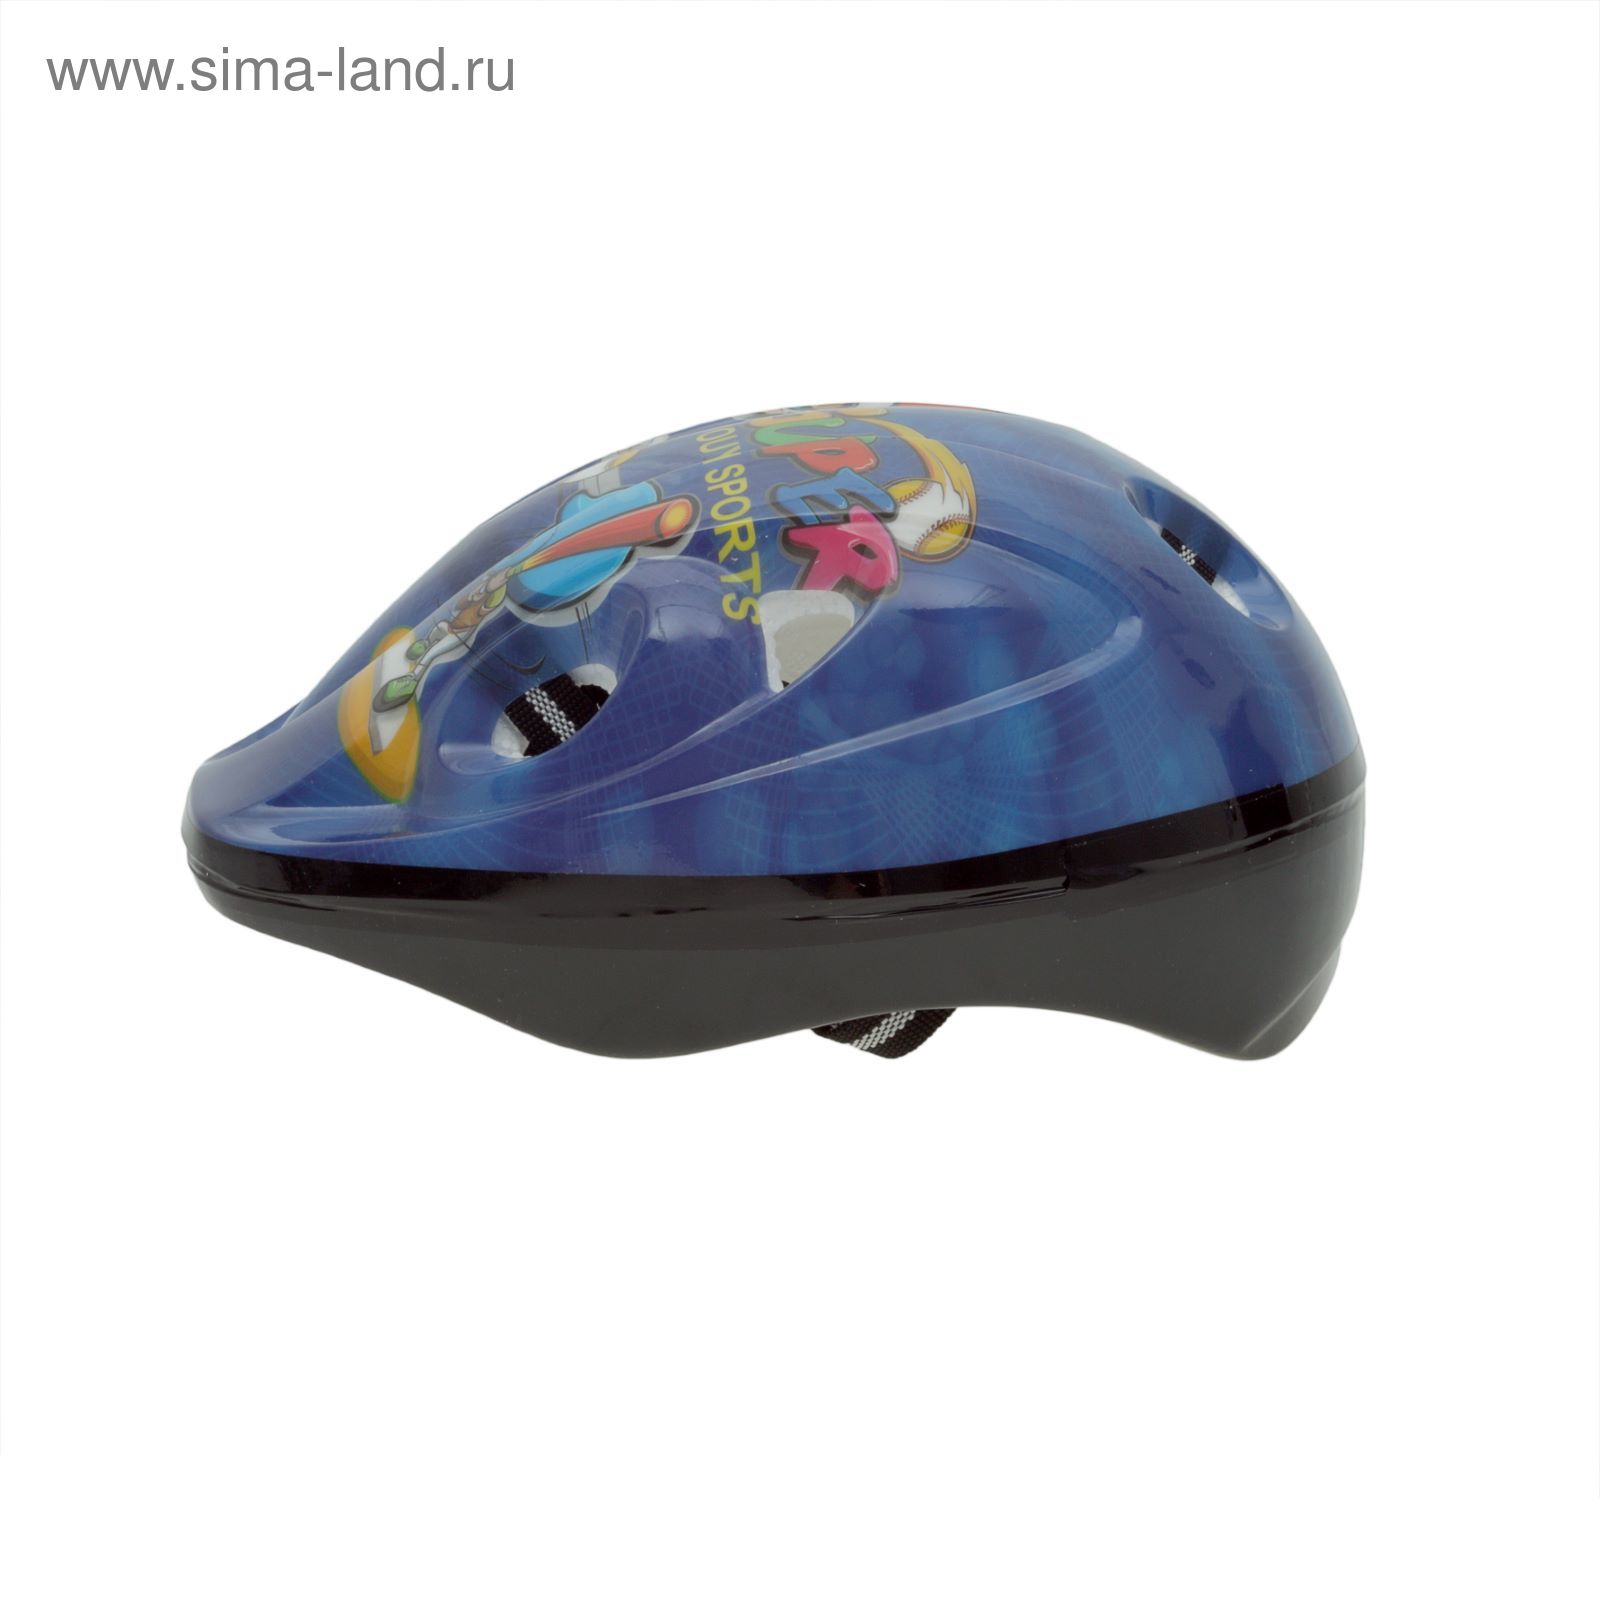 Шлем защитный OT-S502 детский р S (52-54 см), цвет синий